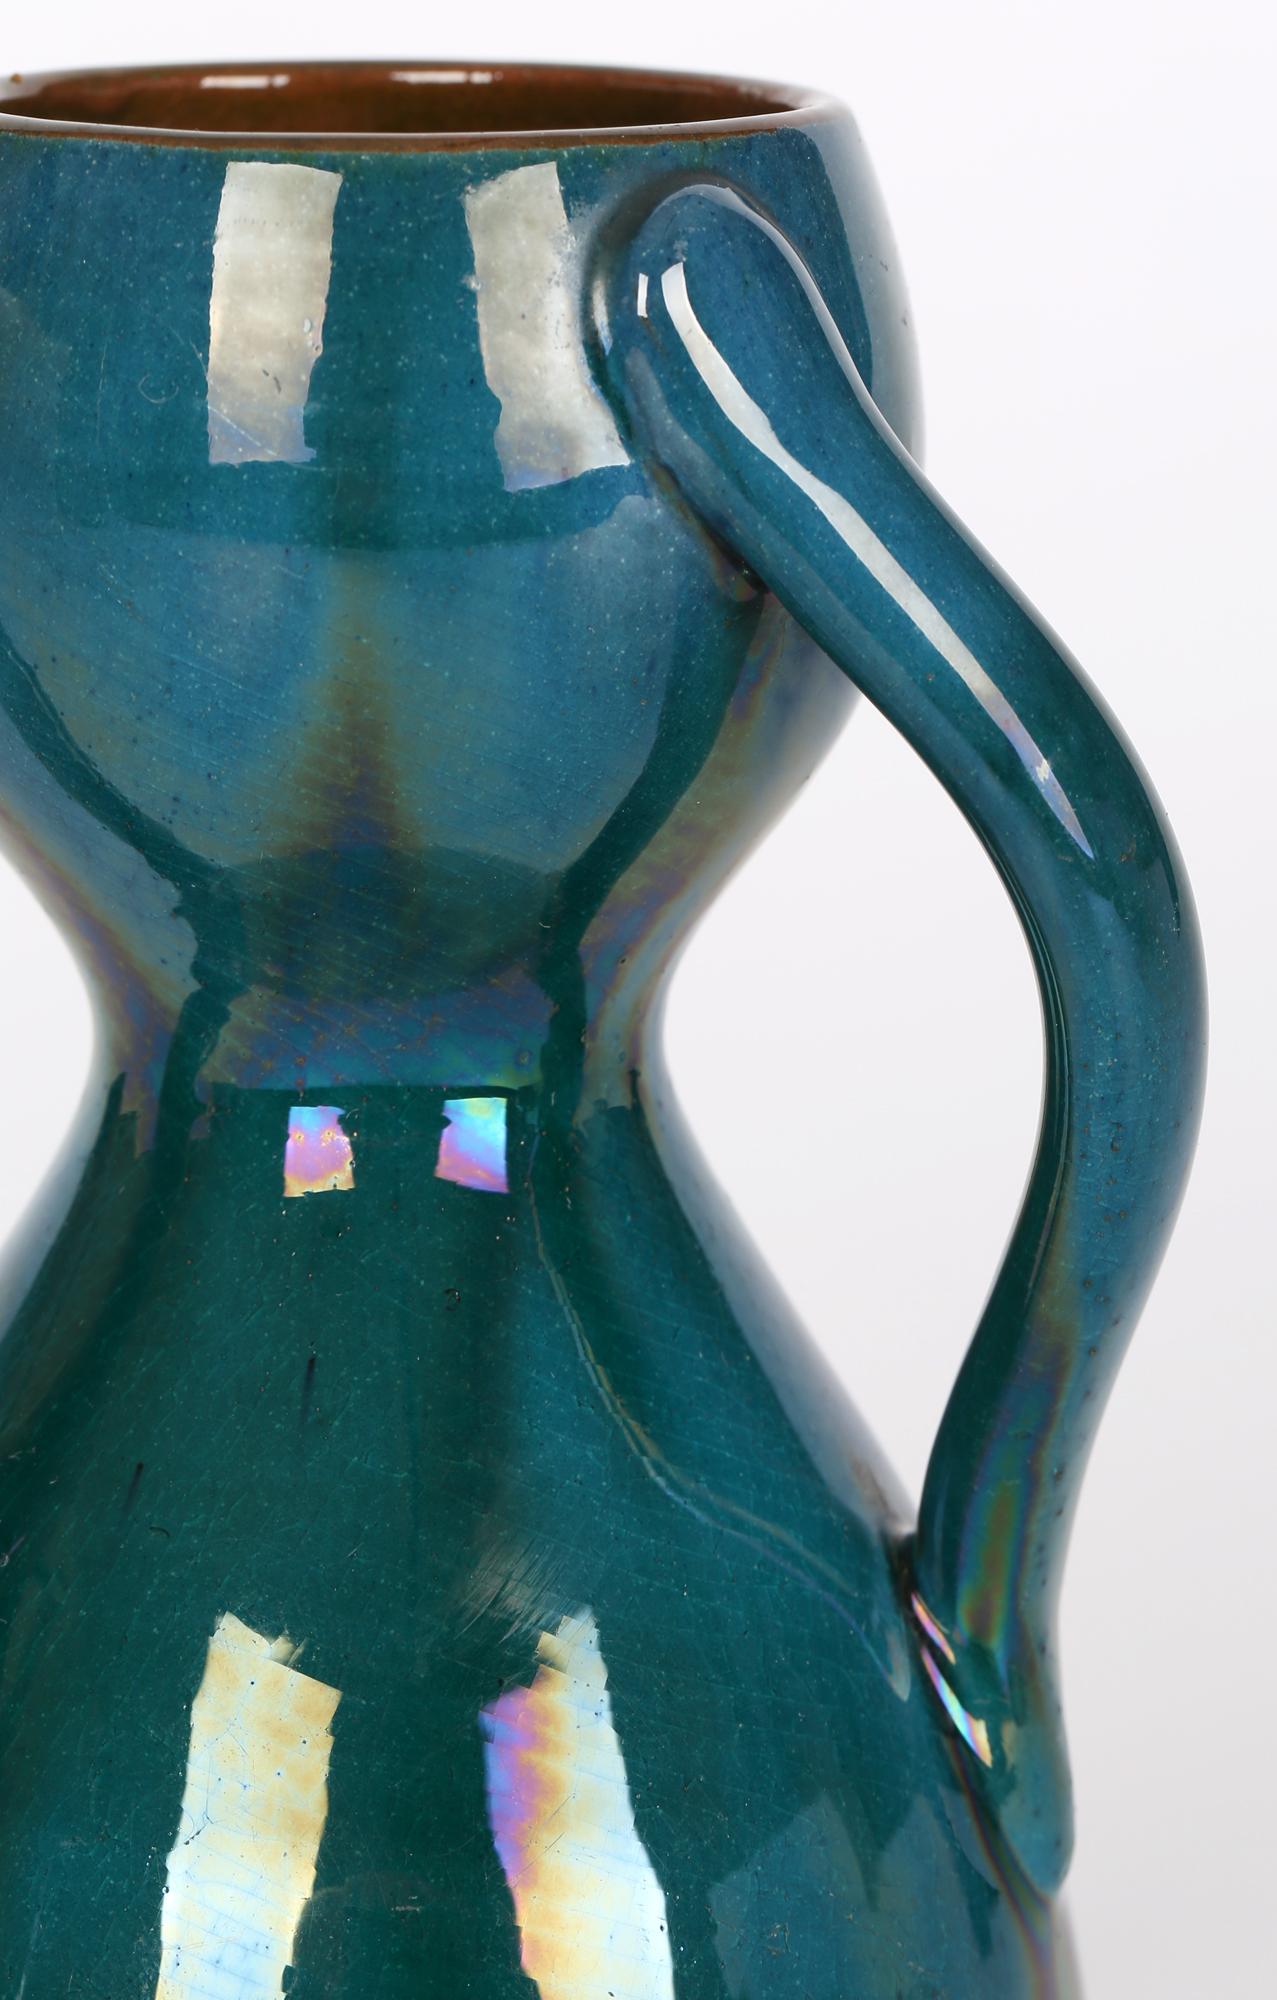 Un superbe vase en forme de sablier à trois anses, de style Arts & Crafts, attribué à Linthorpe et à la manière de Christopher Dresser (britannique, 1834 - 1904), datant d'environ 1880. Le vase repose sur une base plate émaillée et se compose de